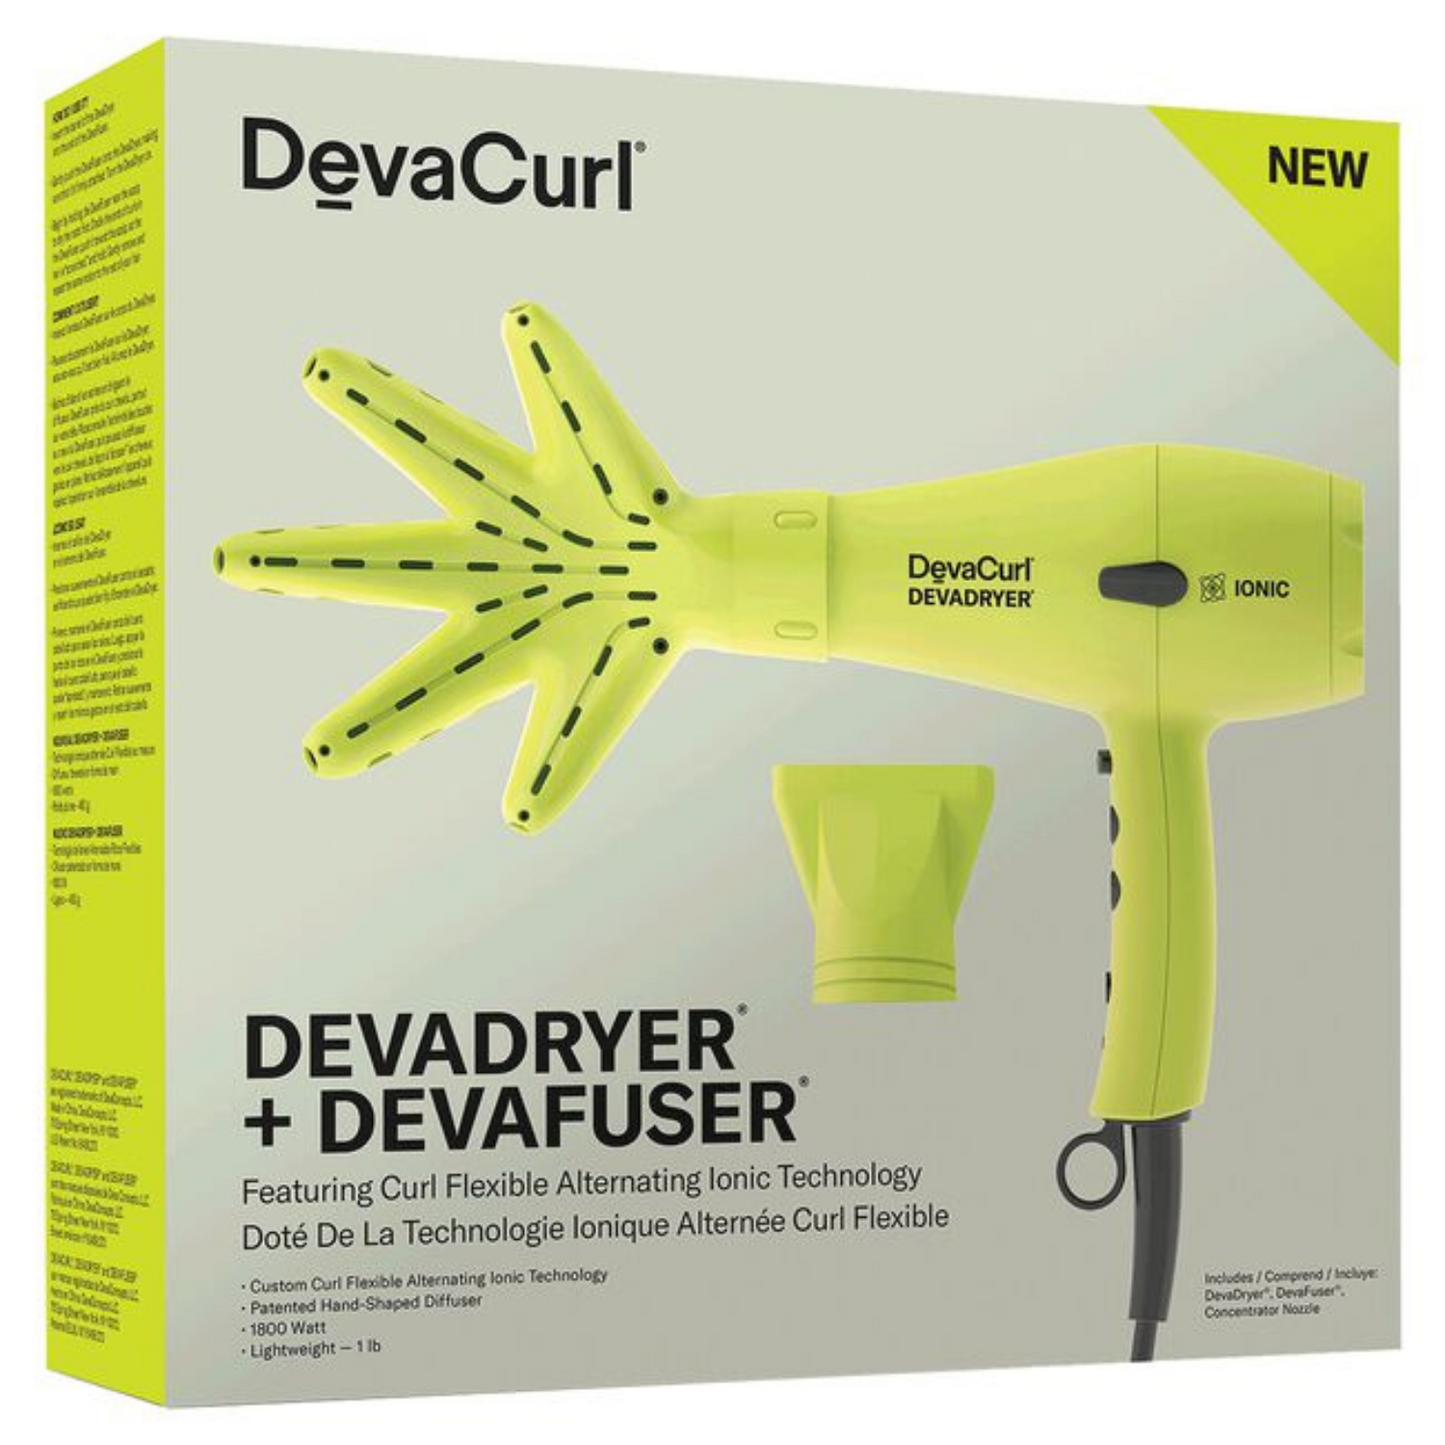 Deva Curl DevaDryer & DevaFuser